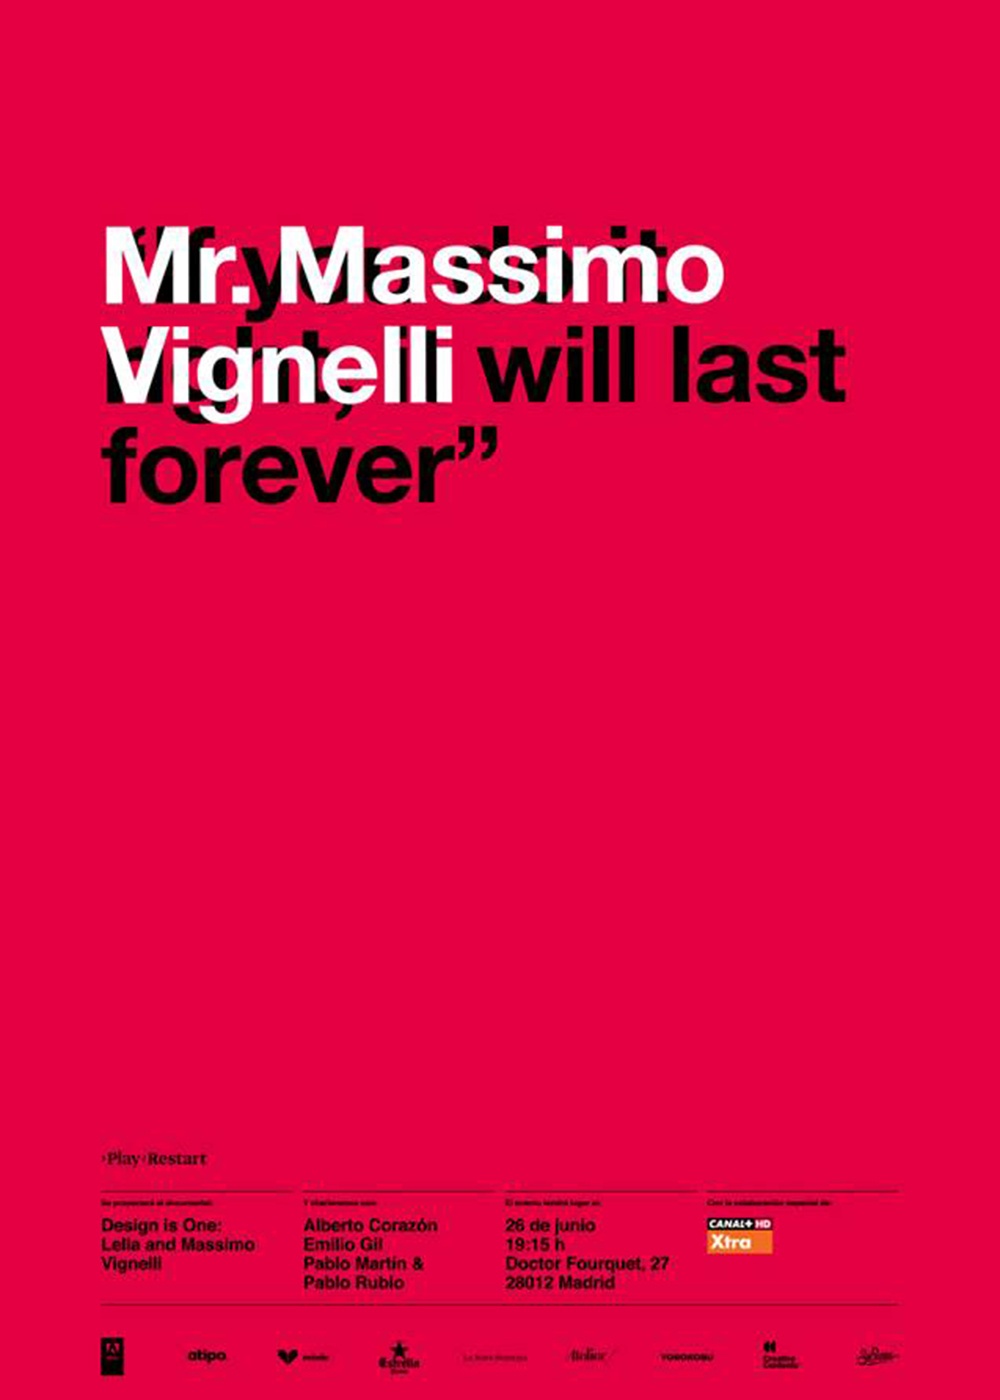 PlayRestart recuerda a Vignelli